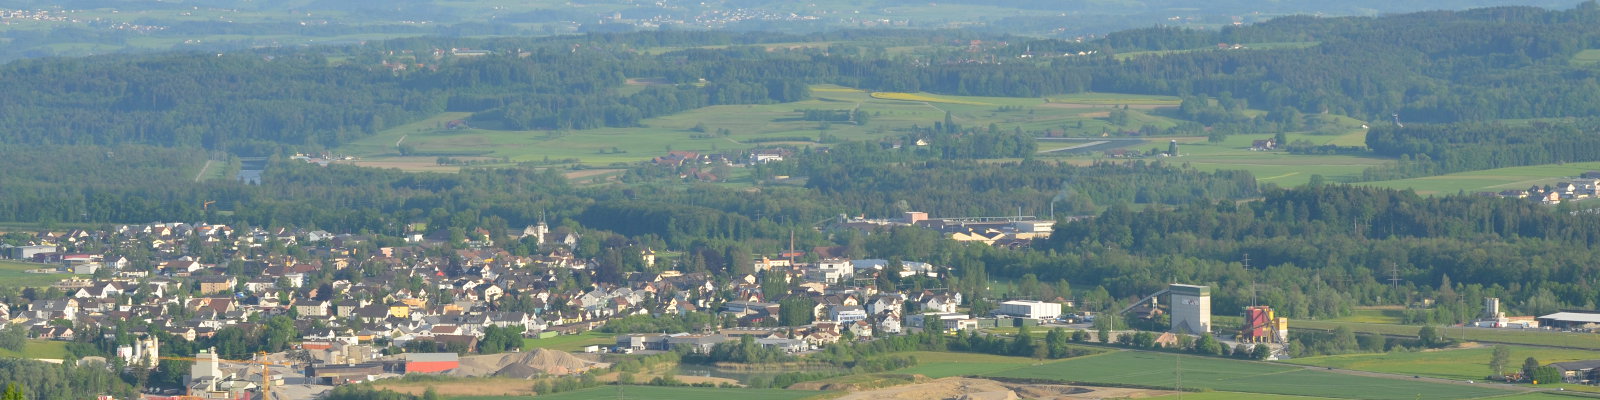 SVIL: 2. Thurgauer Thur-Korrektion – machbar mit weniger Landverschwendung